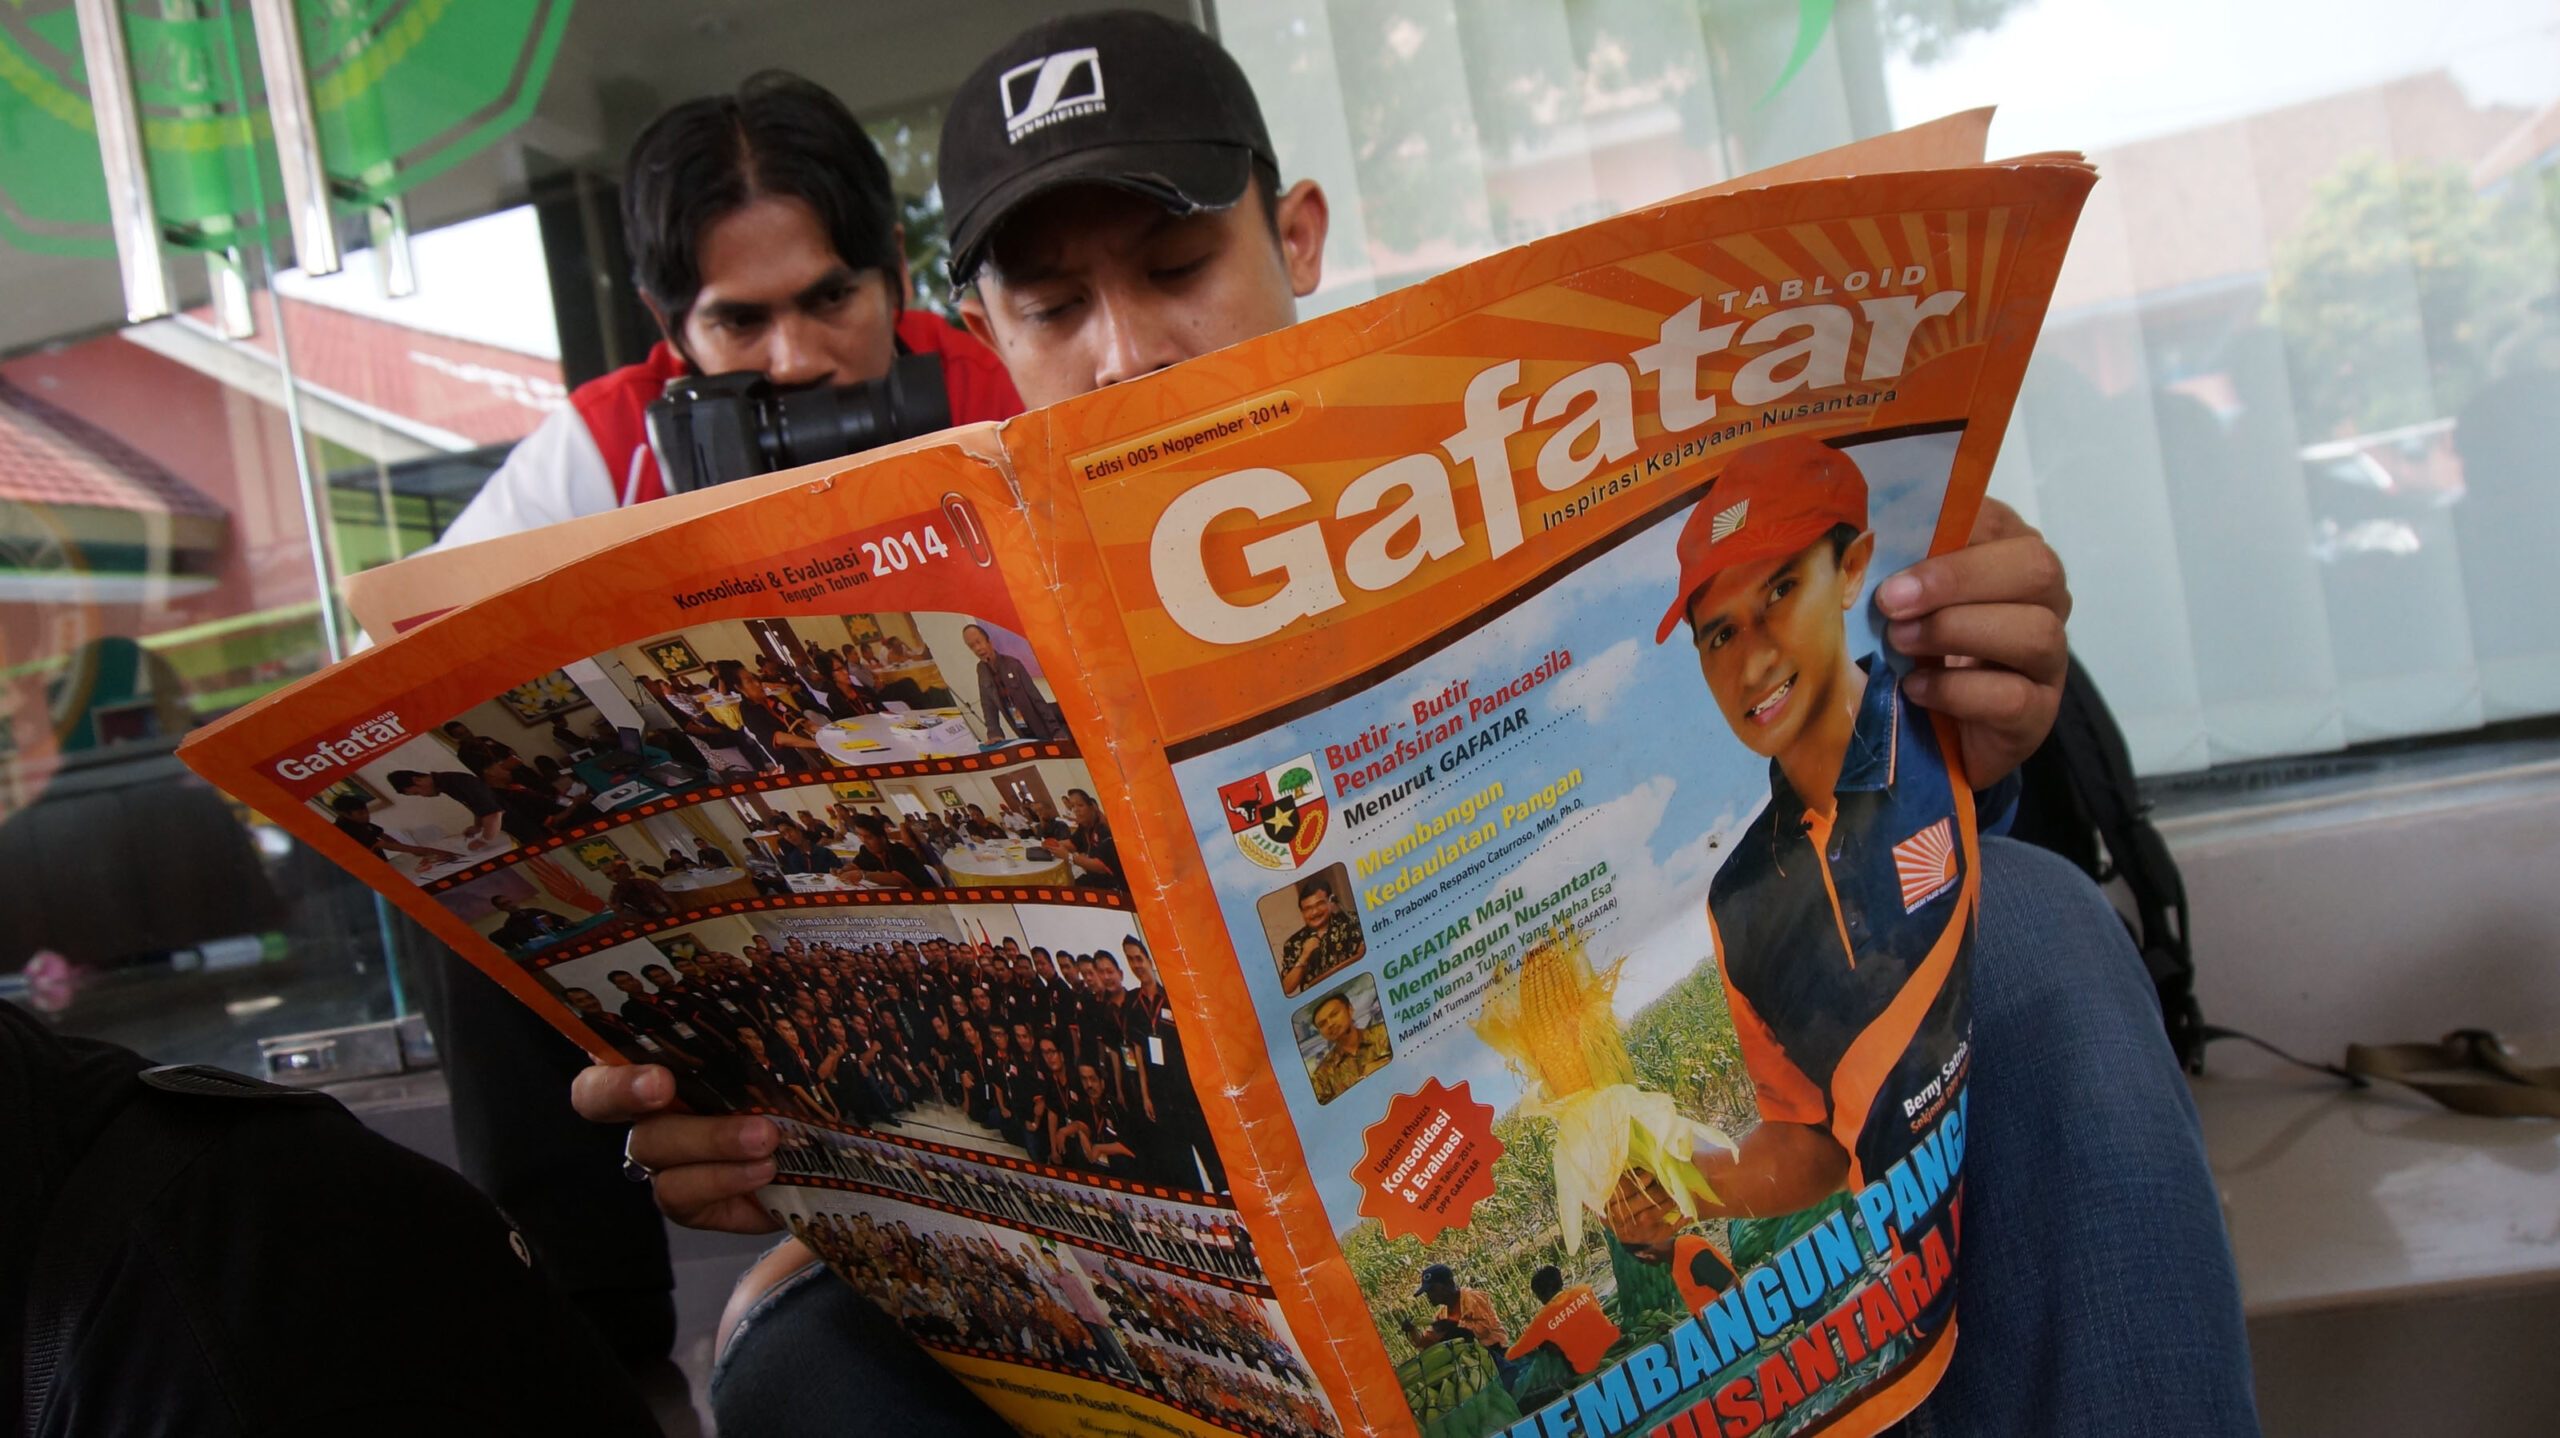 Buat resah publik, Jokowi minta pergerakan Gafatar dipantau